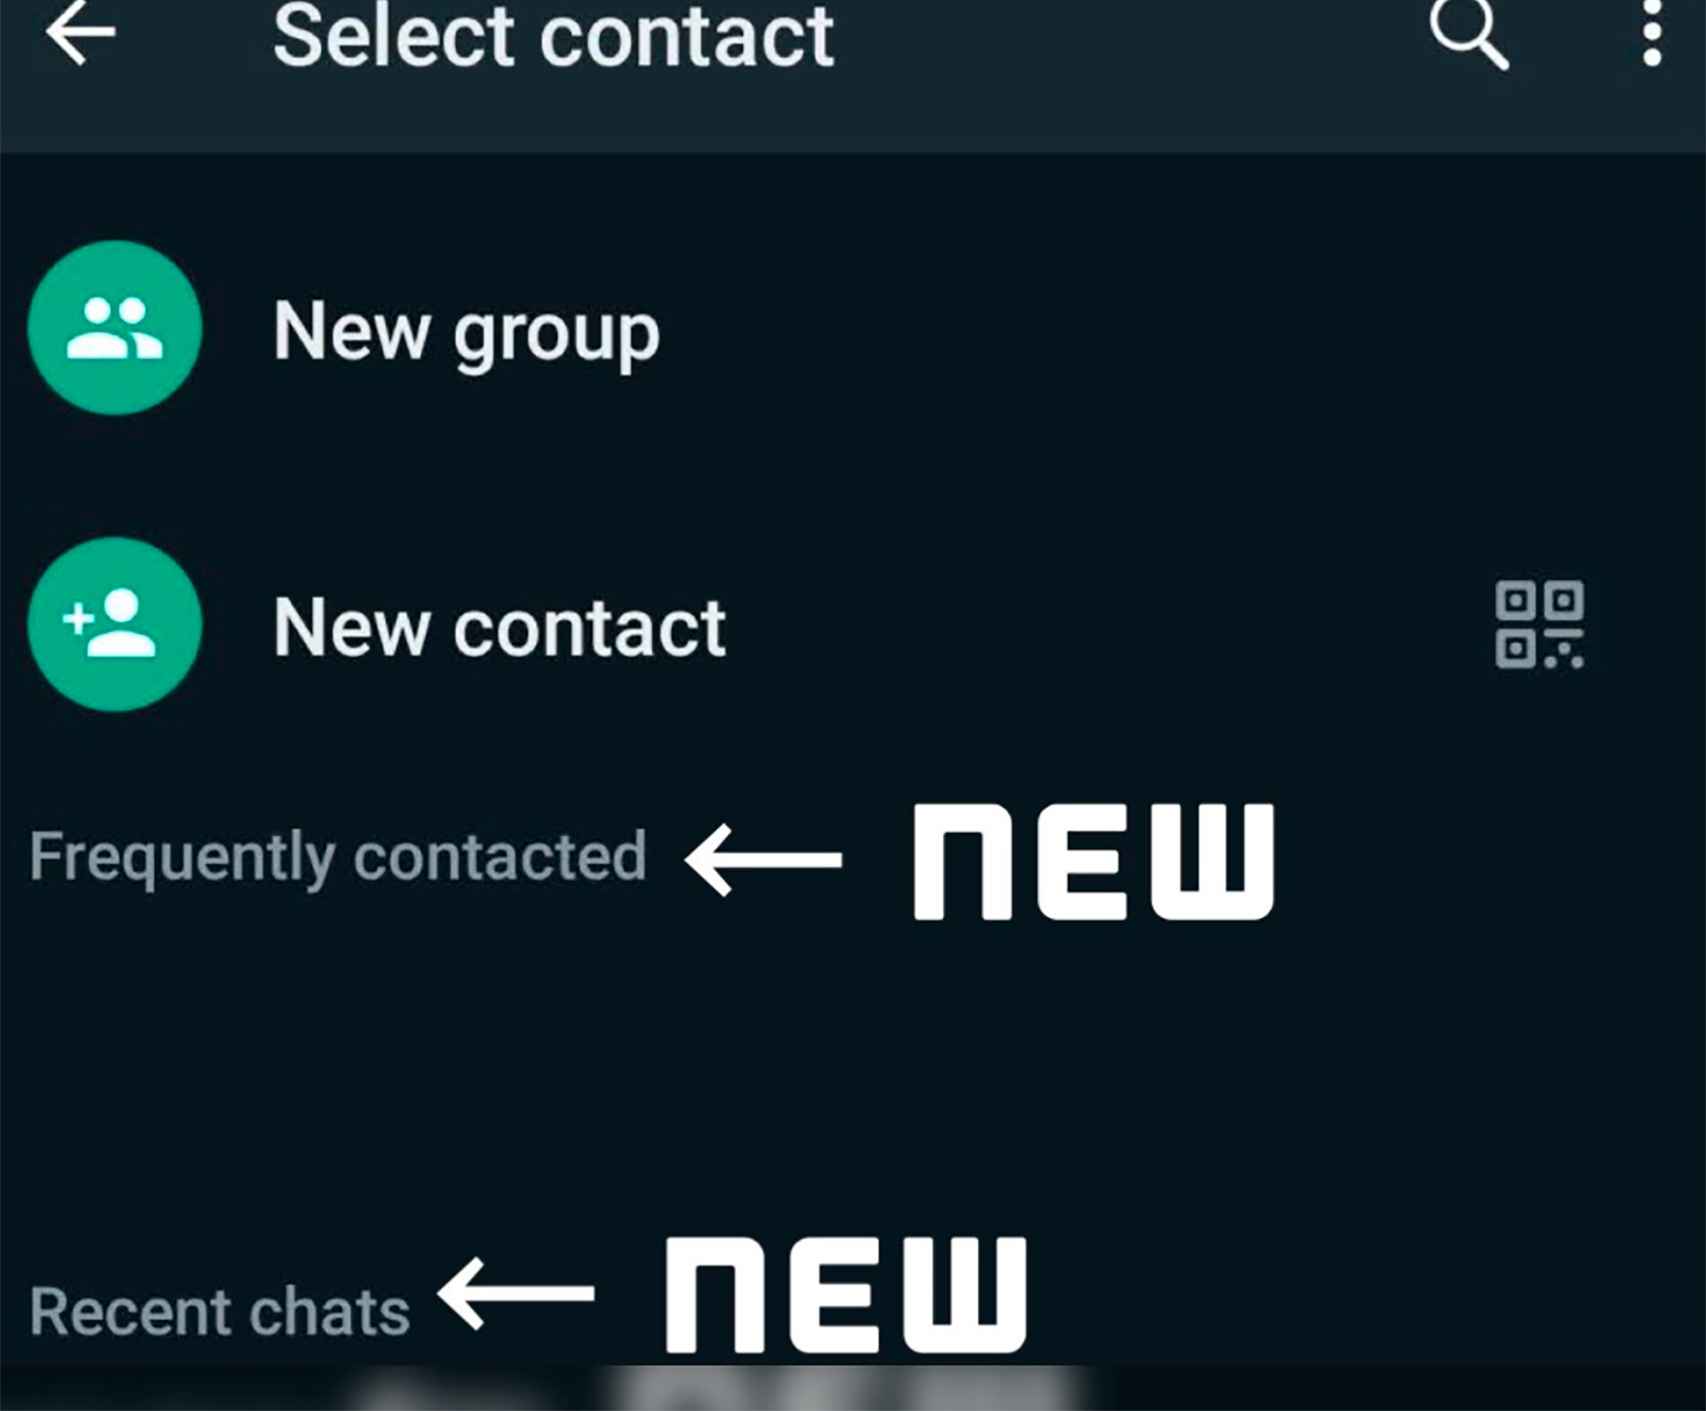 La lista de contactos nueva en WhatsApp